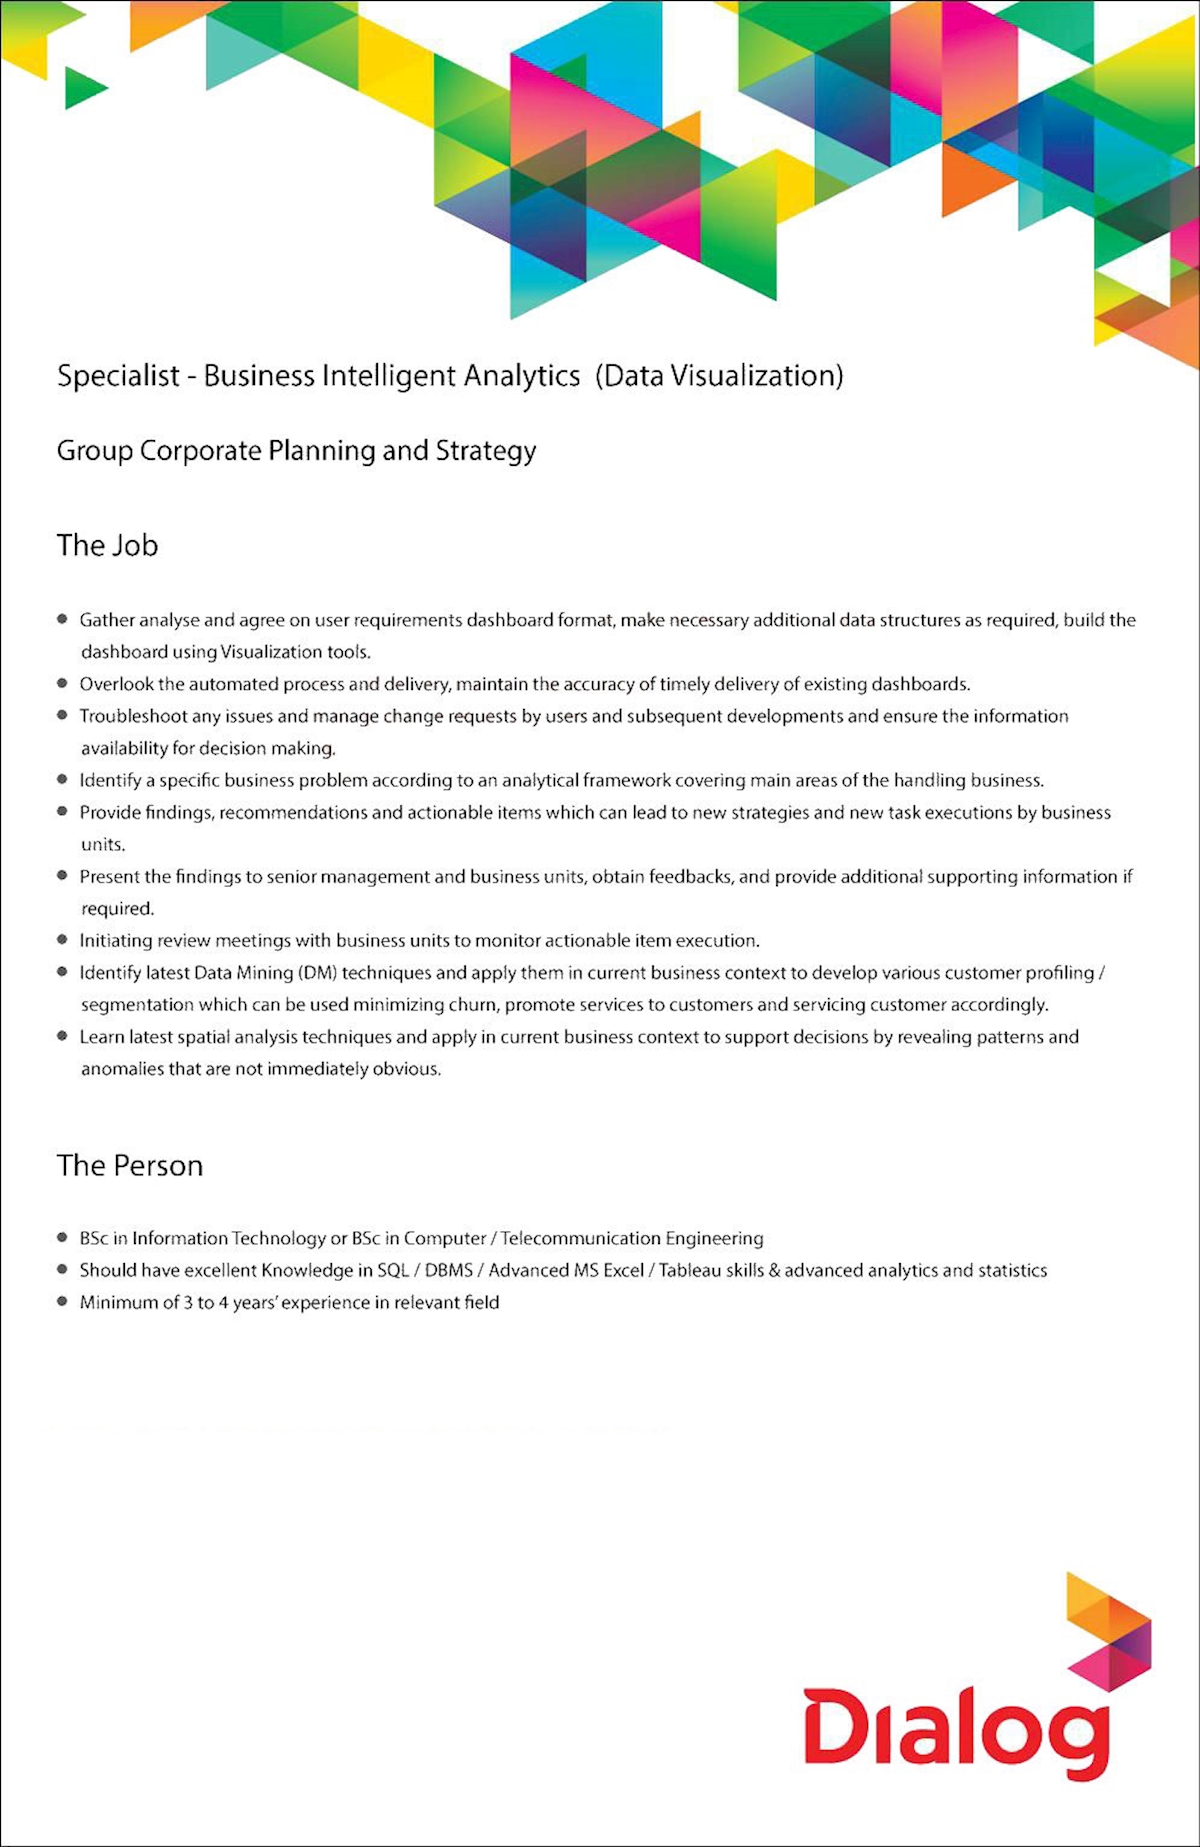 Specialist - Business Intelligent Analytics (Data Visualization)